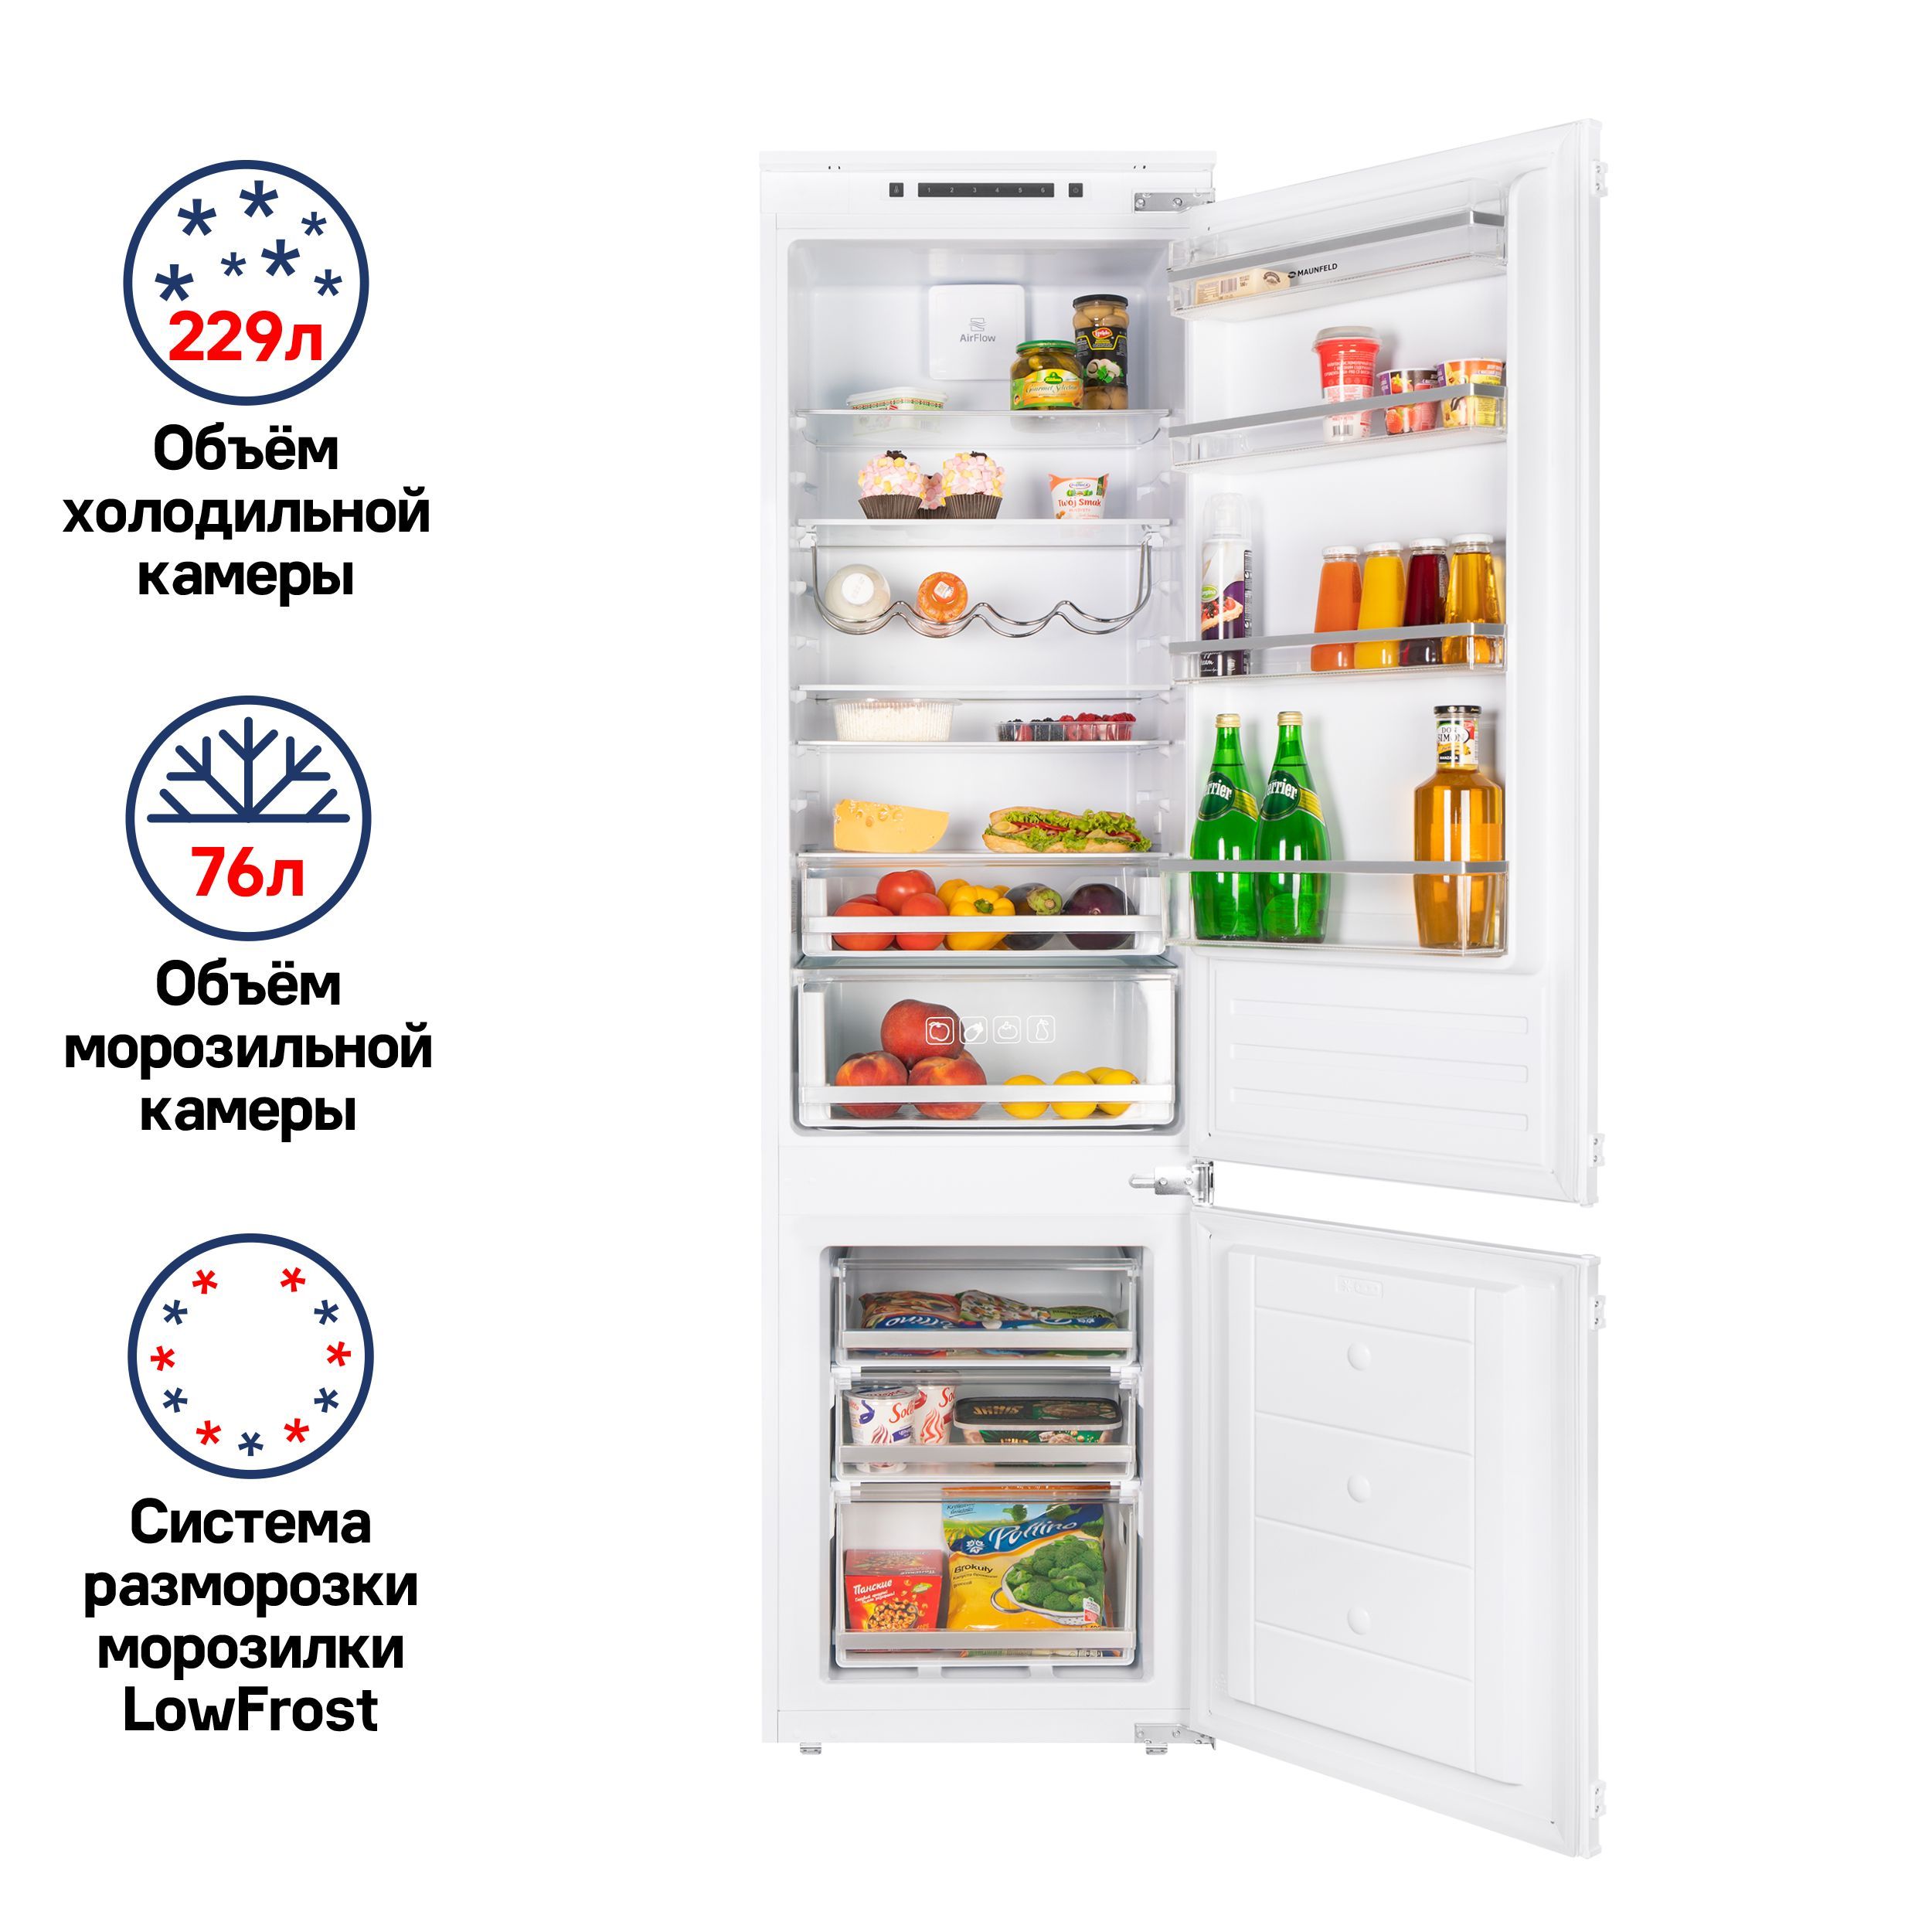 Встраиваемый холодильник Scandilux rbi524ez